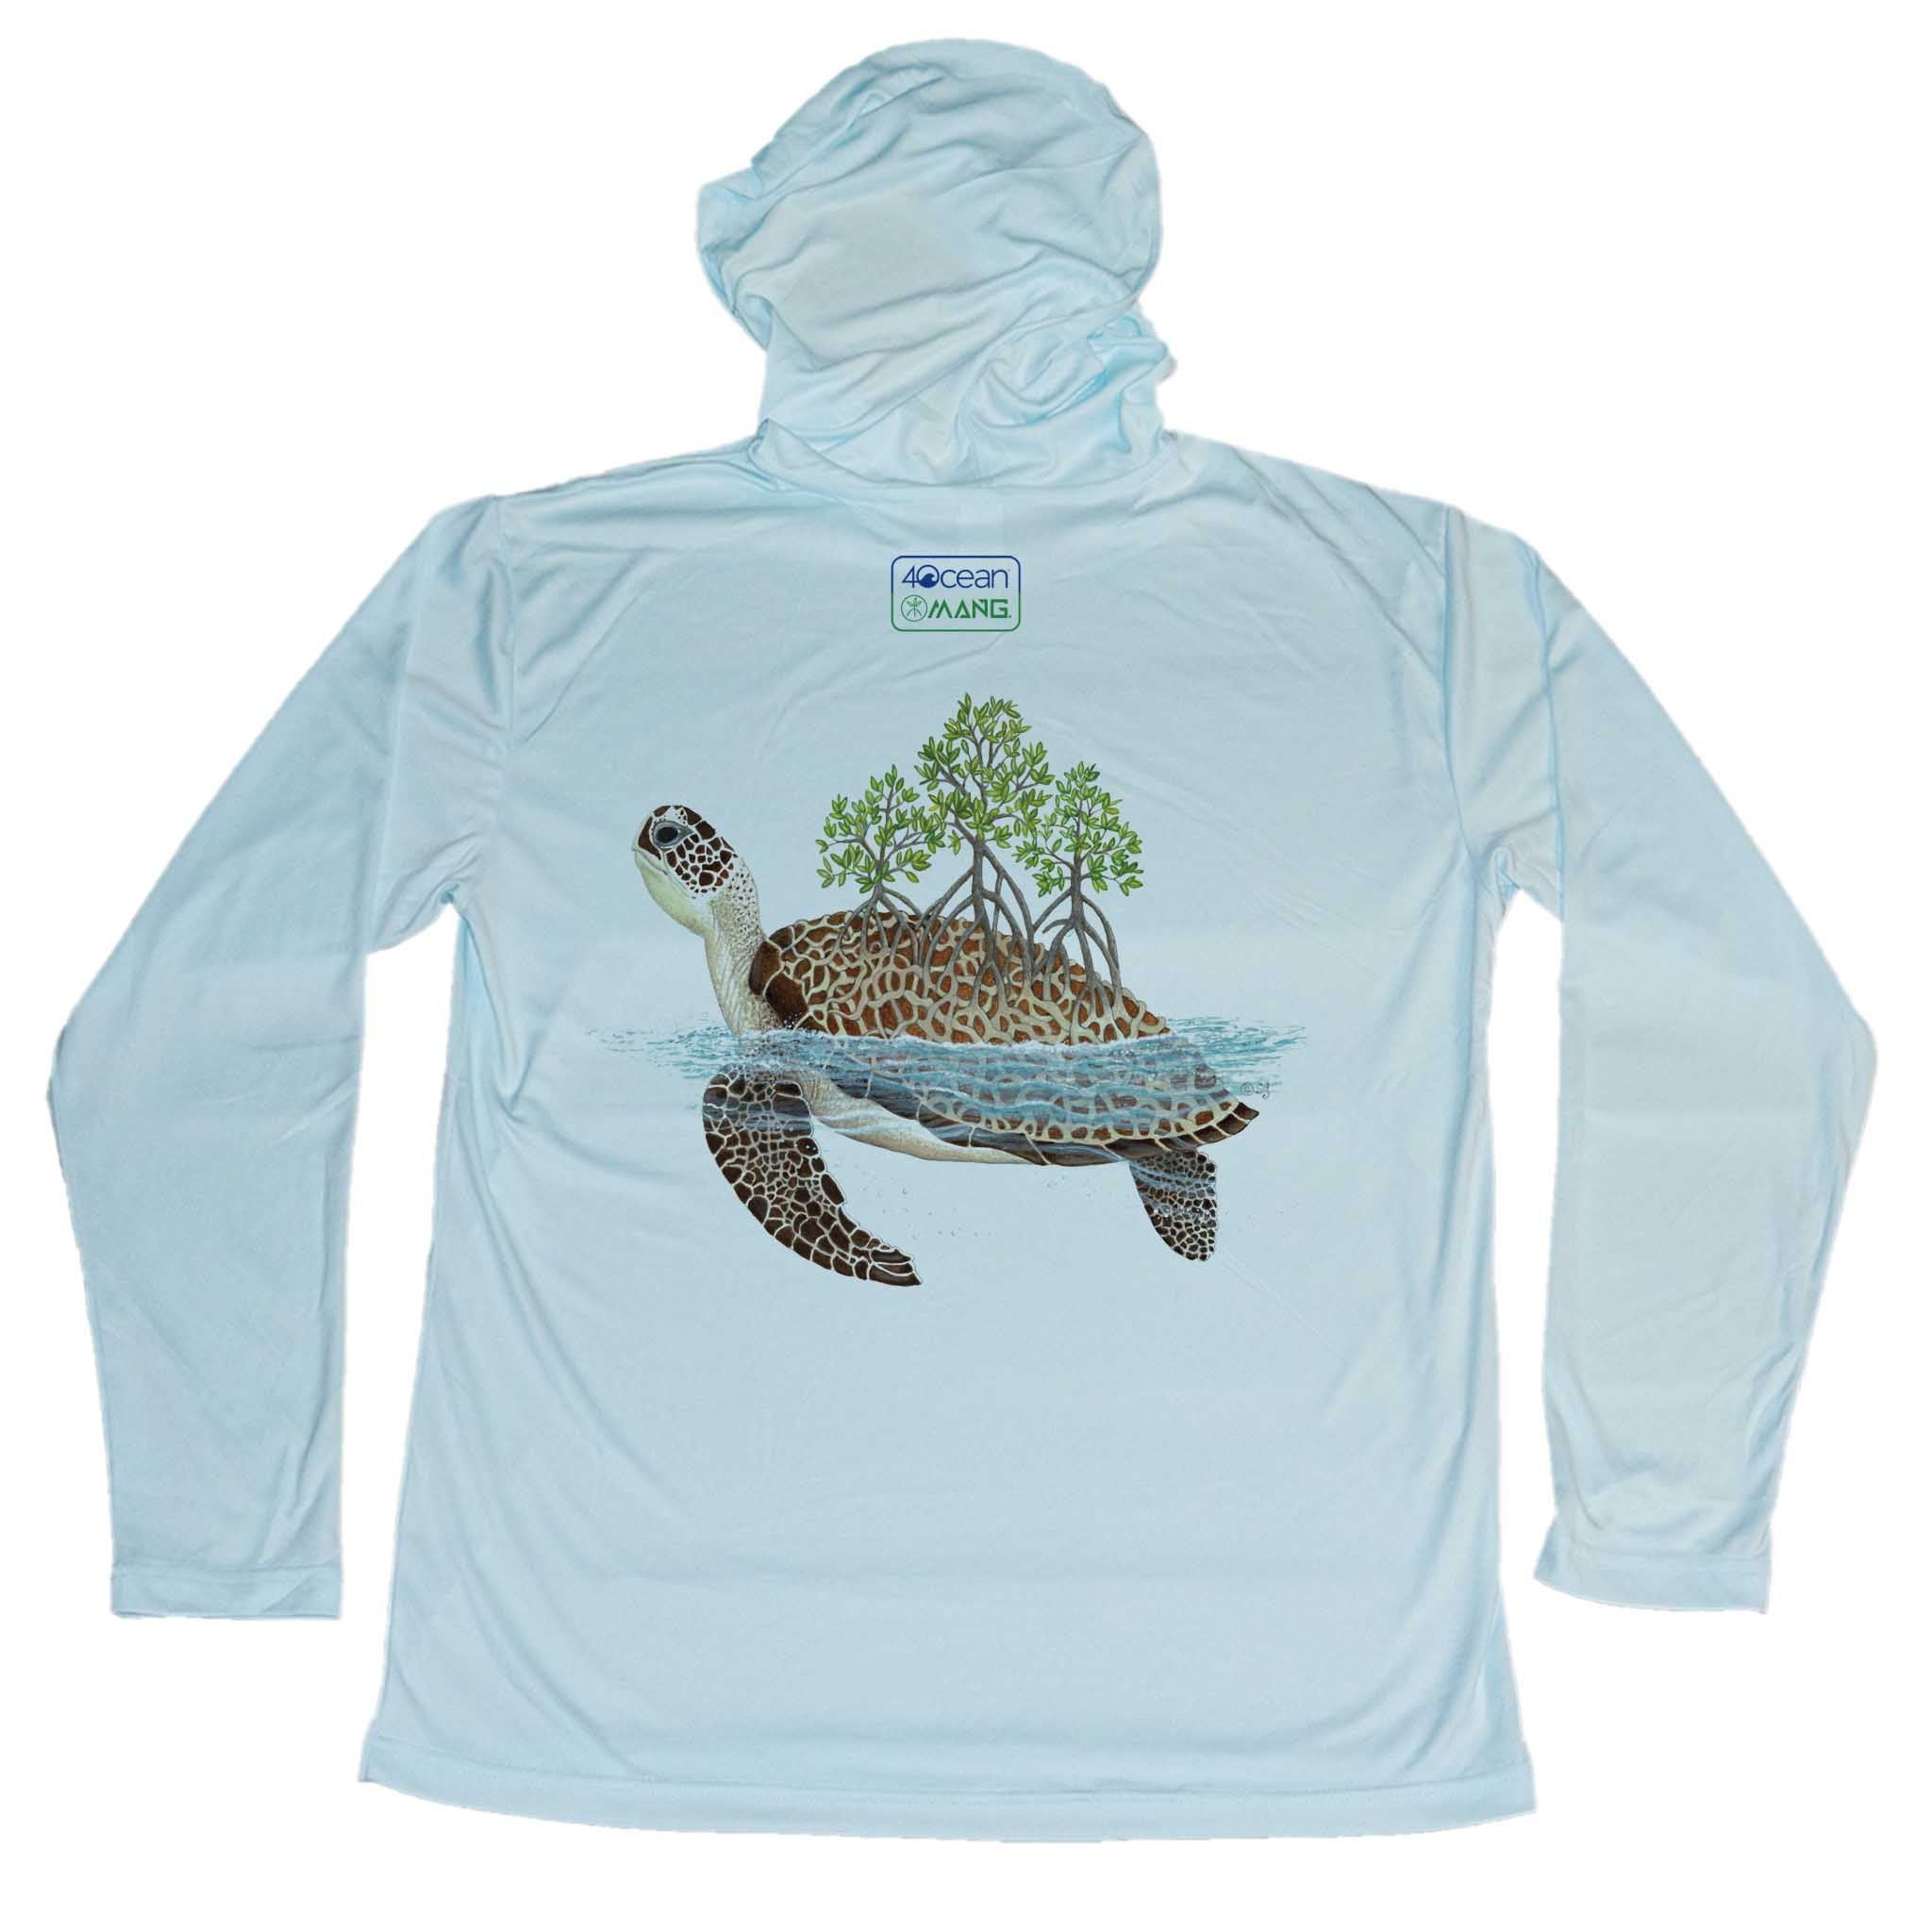 4ocean Turtle Eco Hoodie - Men's